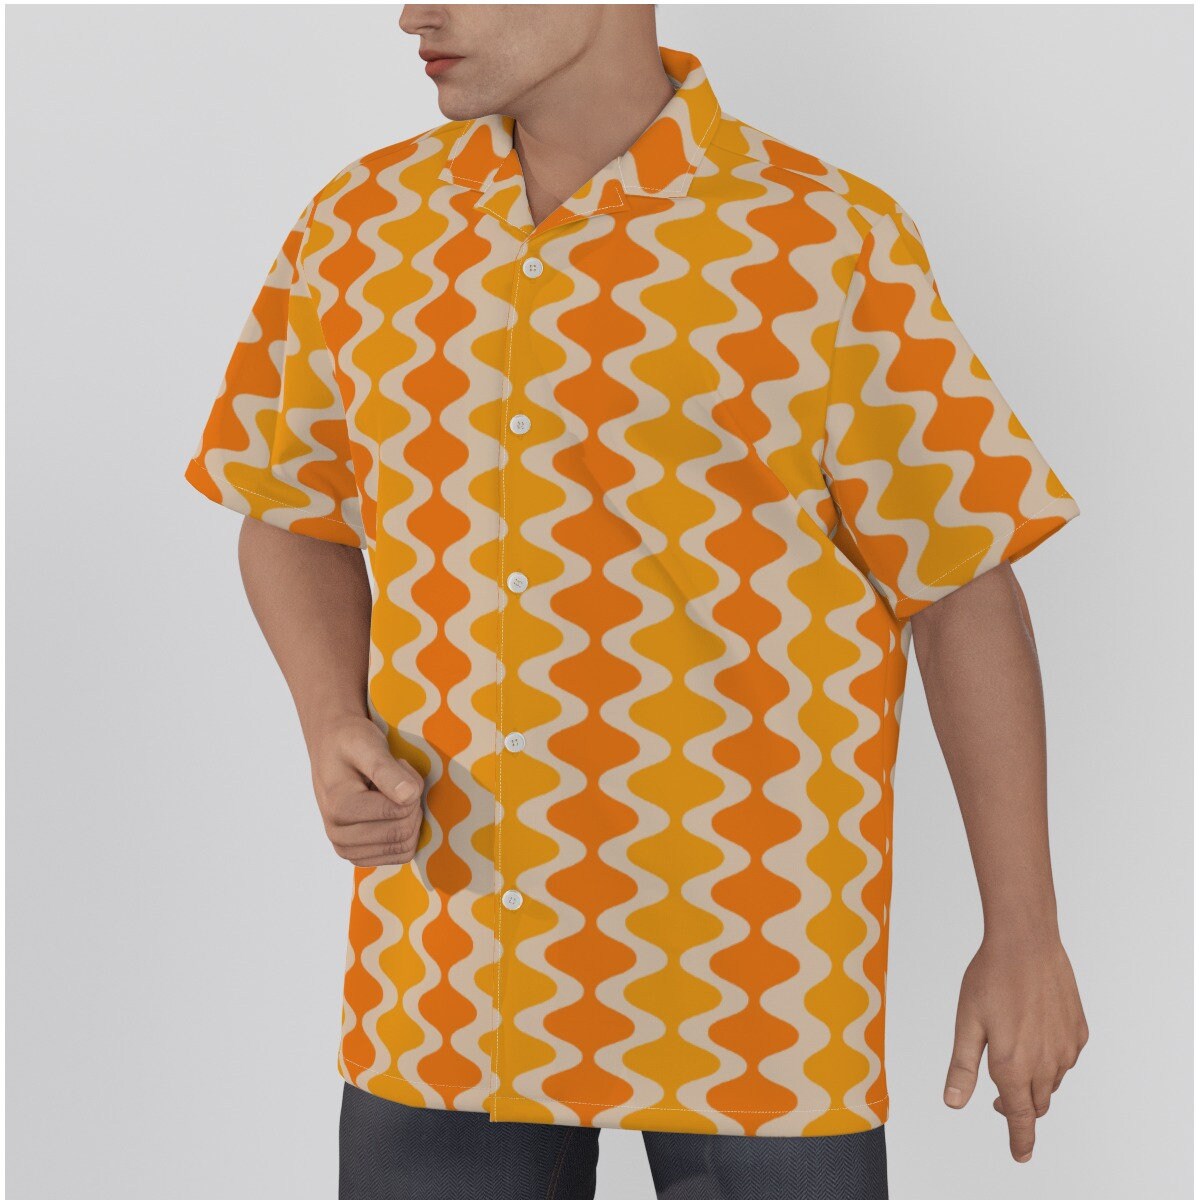 Chemise rétro hommes, haut rétro, haut de style du milieu du siècle, chemise de style années 60 70, haut de style vintage, chemise orange jaune, chemise hawaïenne, chemise habillée